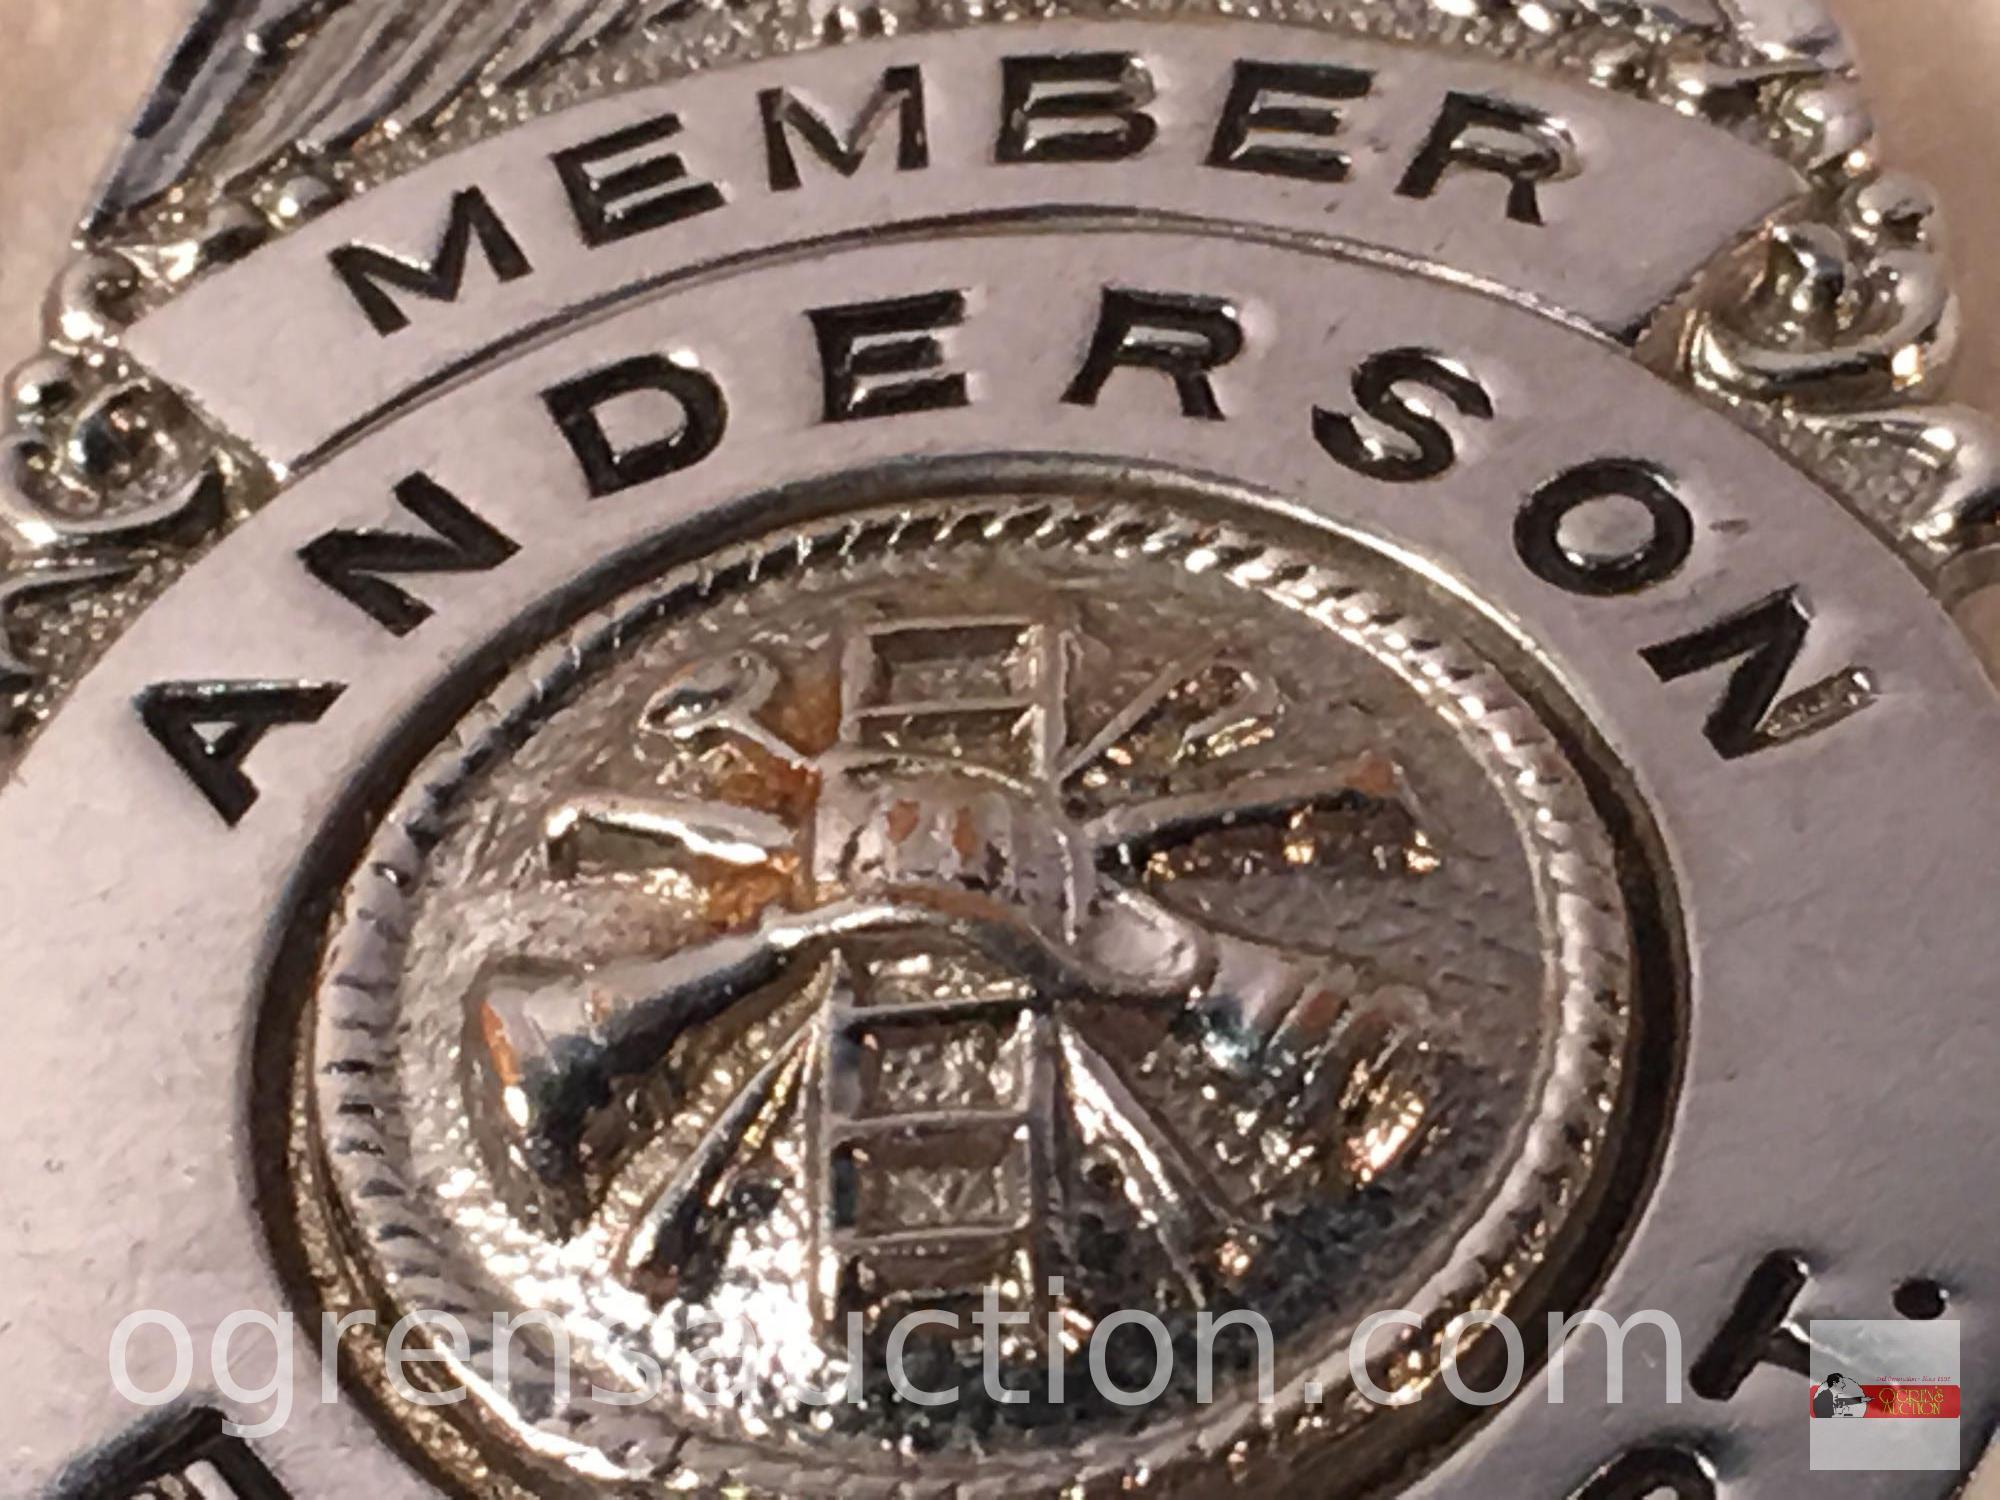 Badge - Member Anderson Fire Dept. 2.25"hx1.25"w